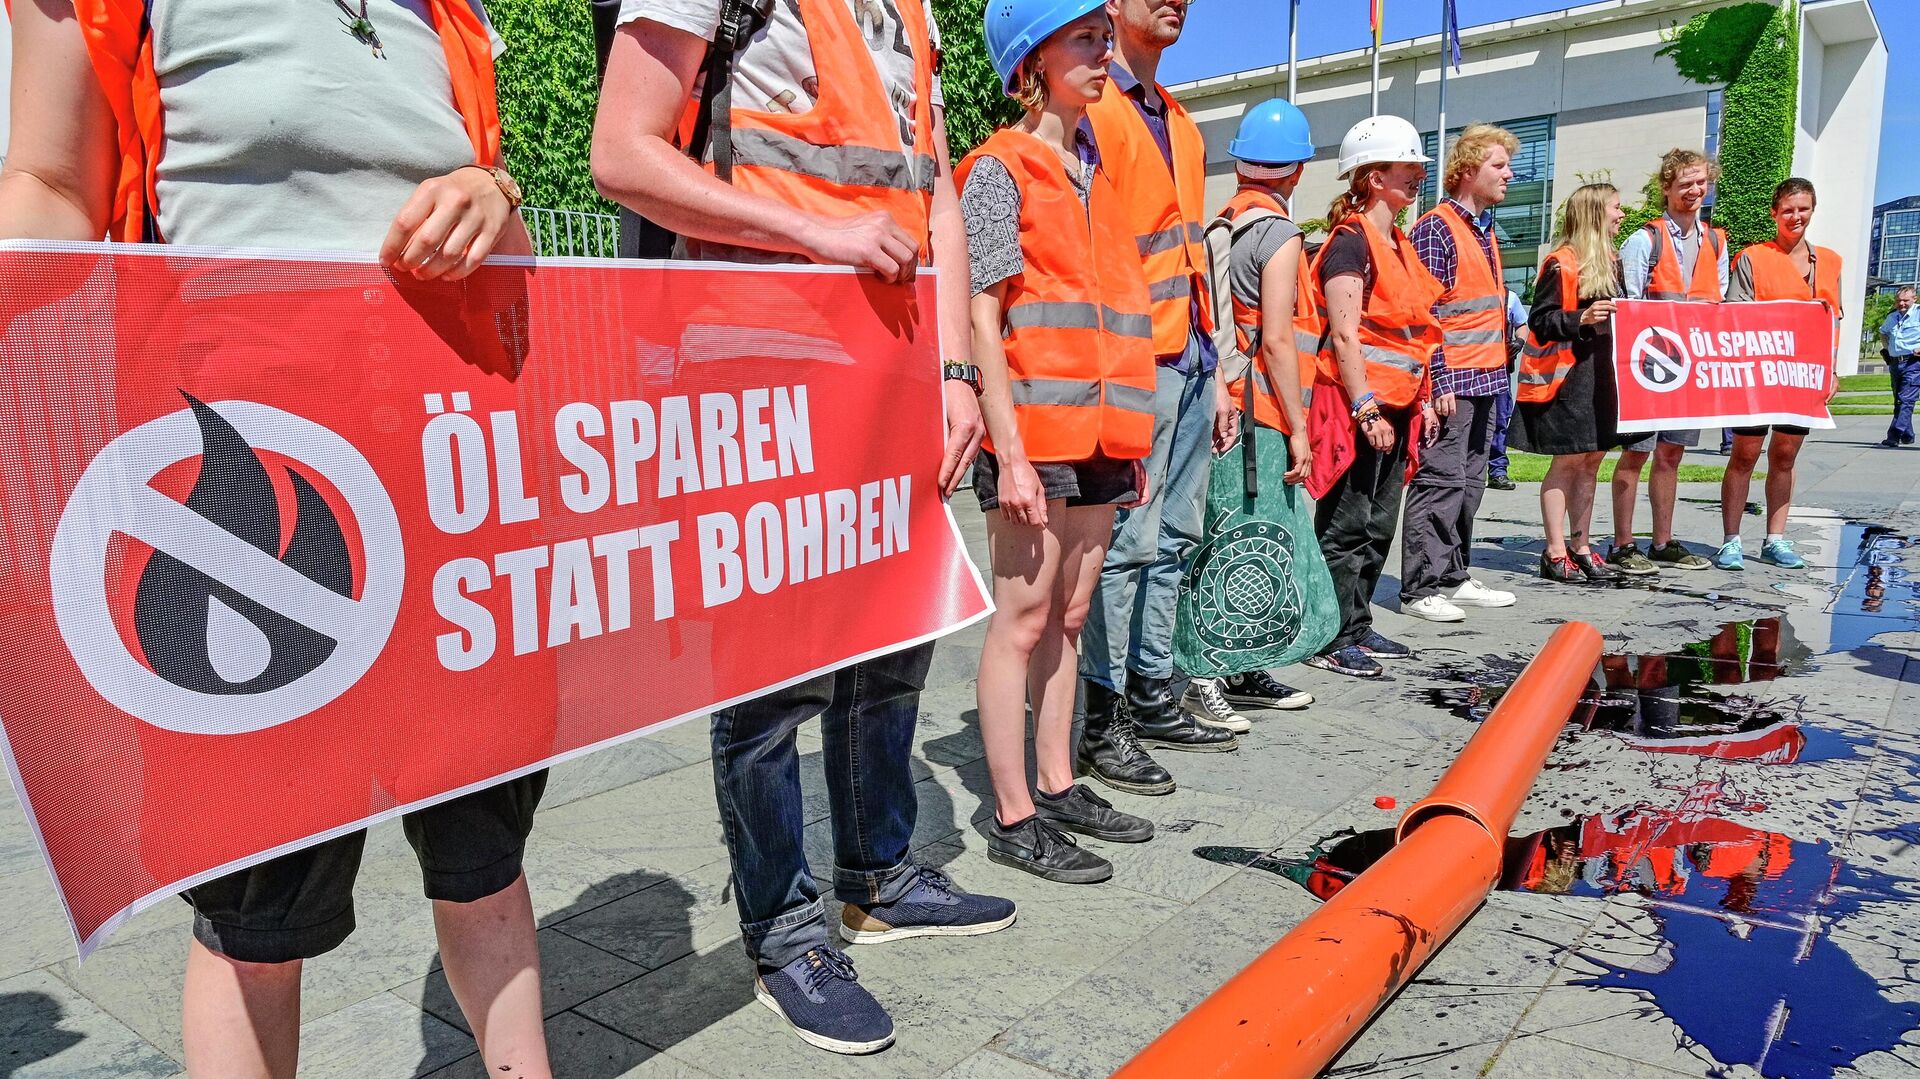 22 июня 2022 года. Акция протеста в Берлине против бурения нефтяных скважин в Северном море  - ИноСМИ, 1920, 11.07.2022